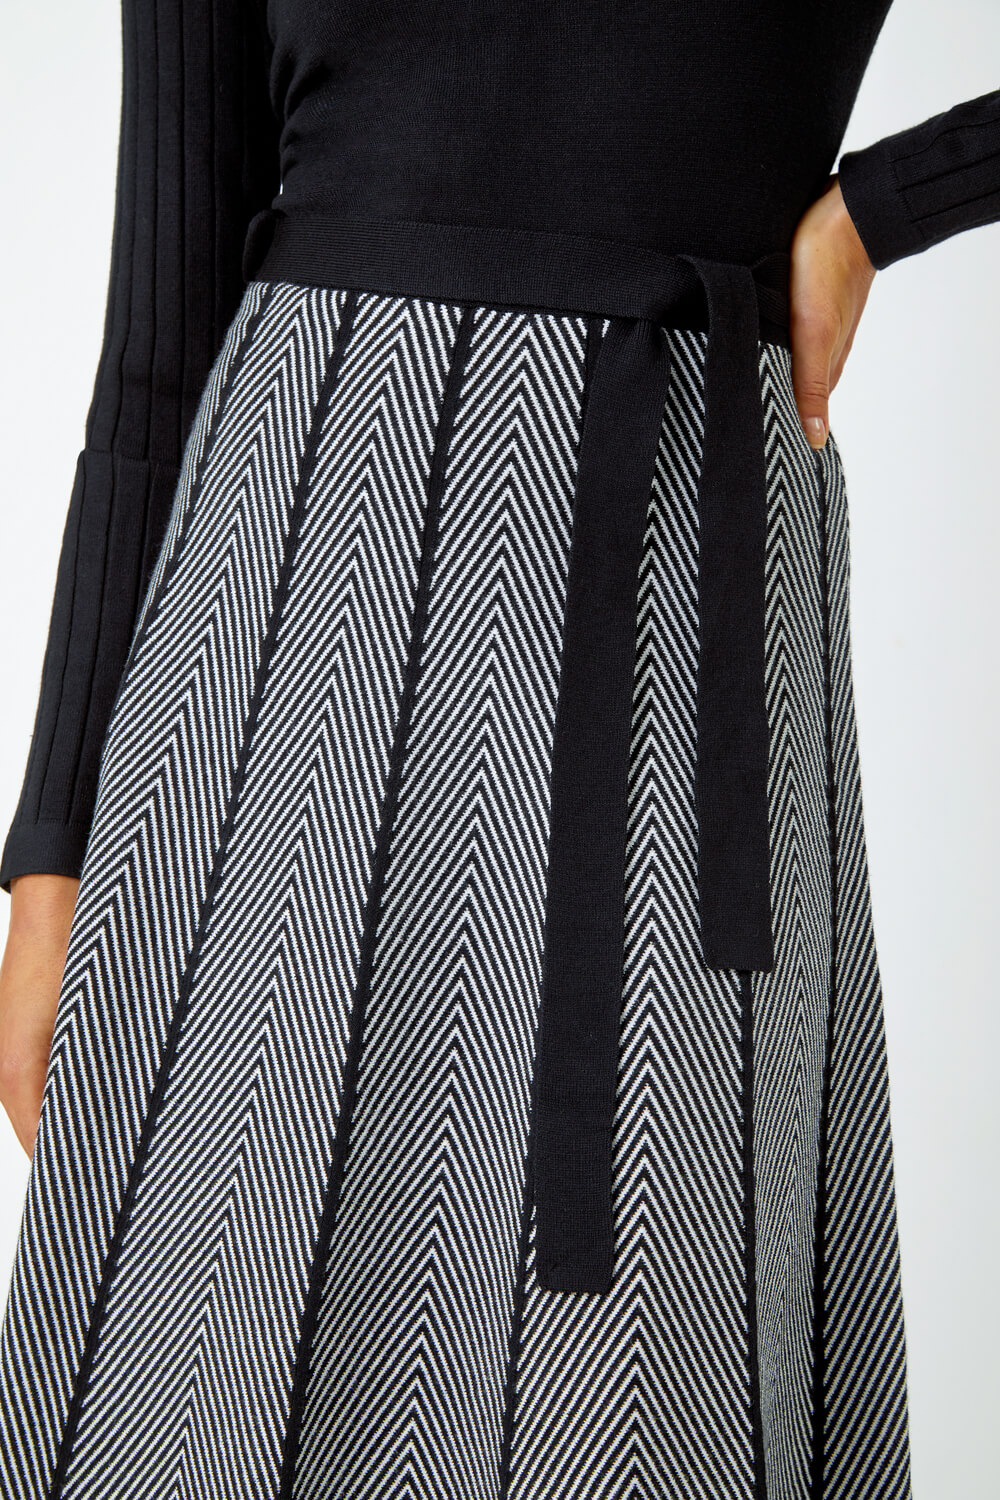 Black Chevron Print Belted Jumper Dress, Image 5 of 5